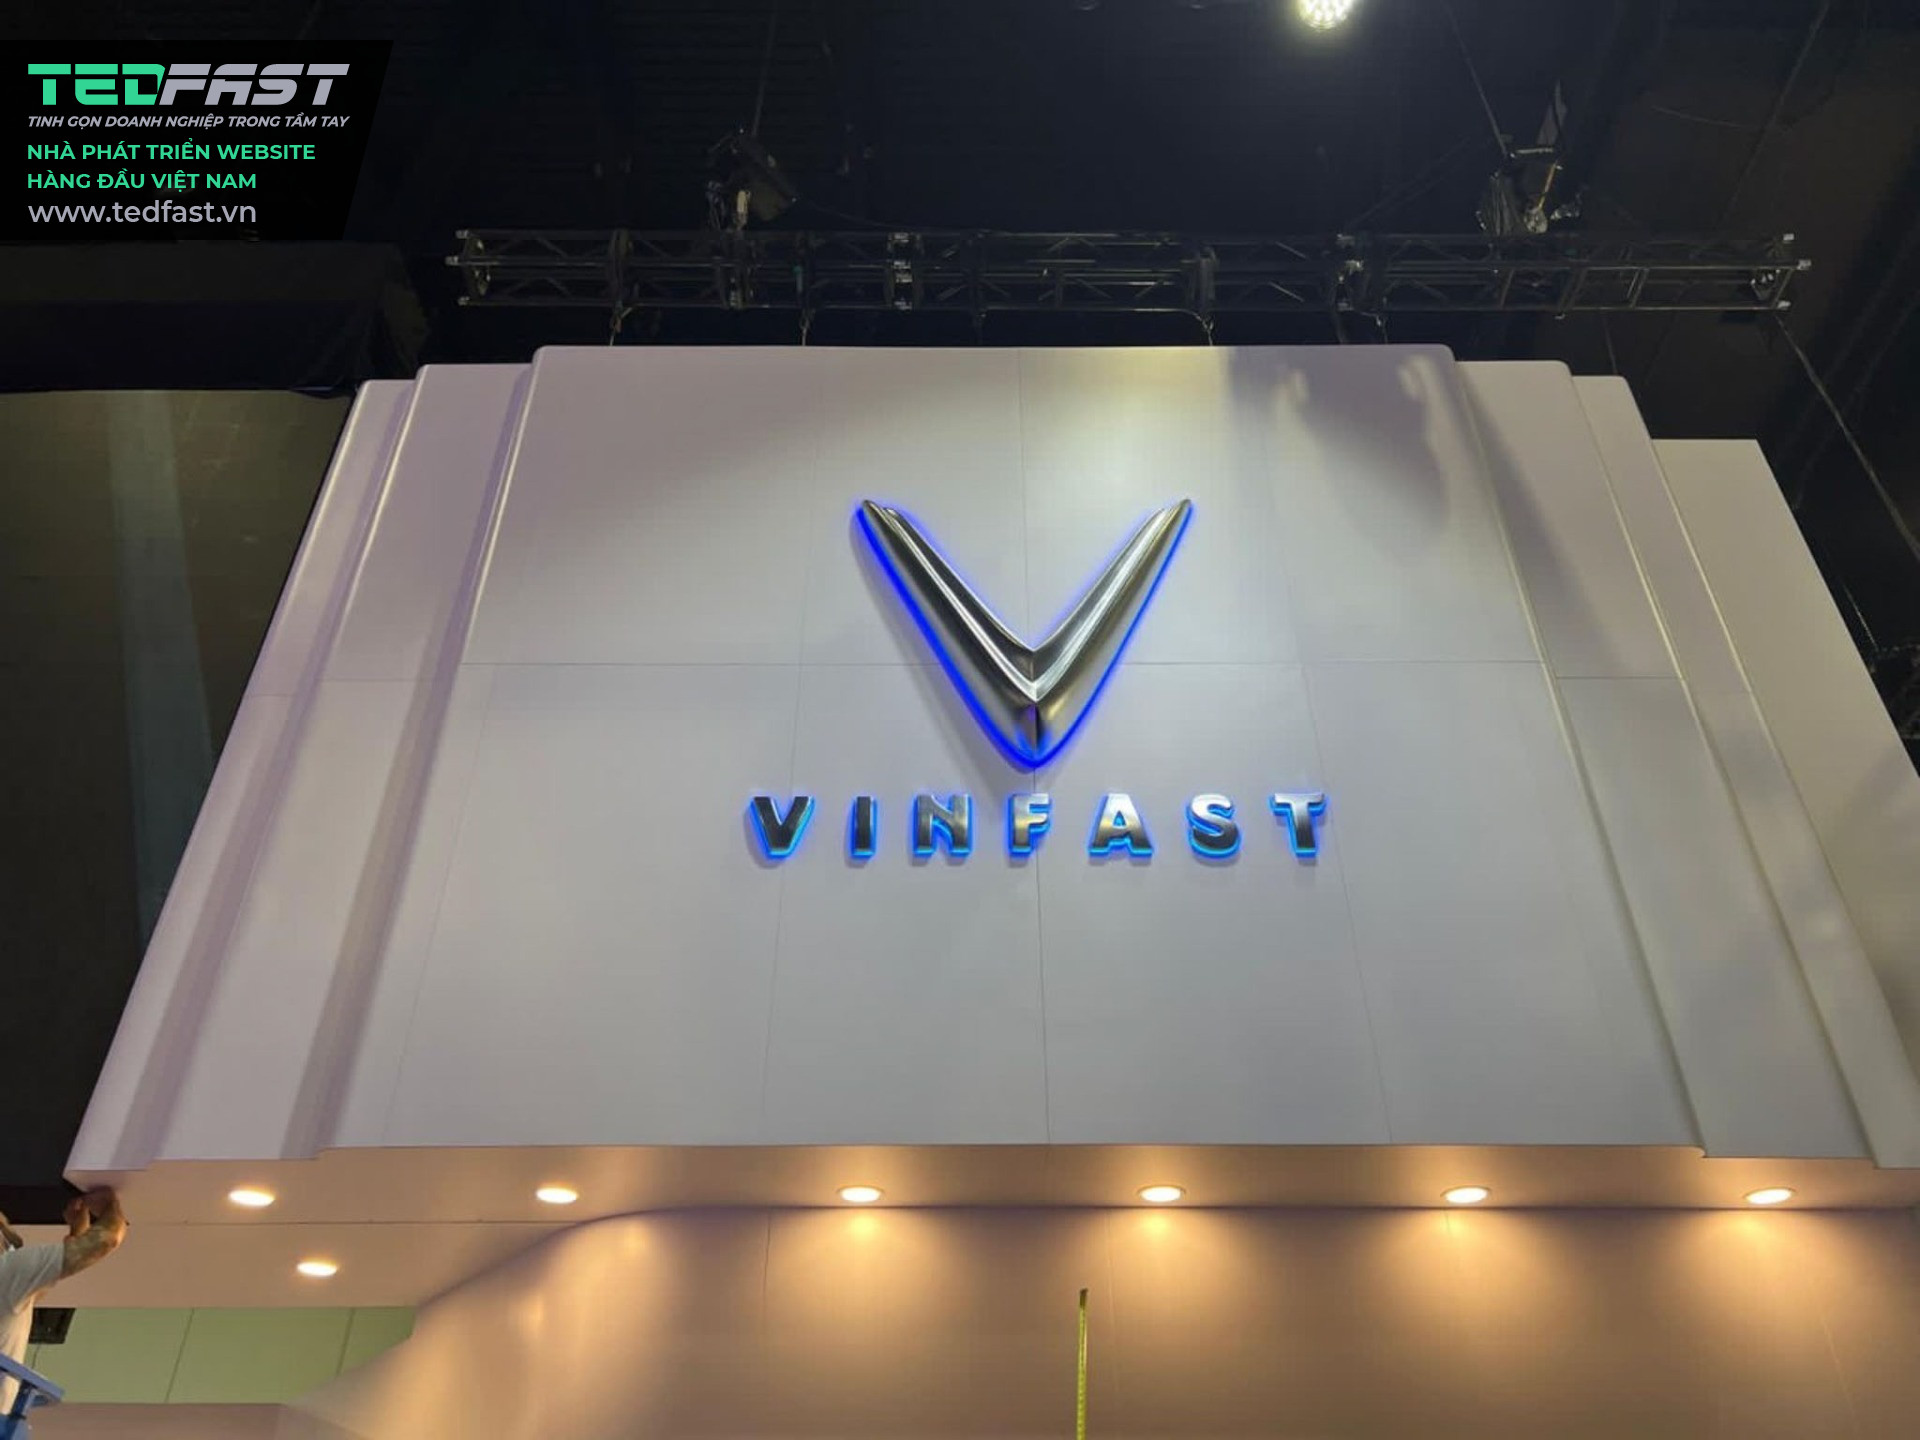 Bài viết giới thiệu dòng sản phẩm Làm bảng hiệu chuỗi đại lý xe điện Vinfast toàn quốc tham khảo dành cho công ty Kiến trúc, xây dựng, nội & ngoại thất Truyền thông, marketing - CÔNG TY TNHH ĐT SX TM DV SUNSHINE